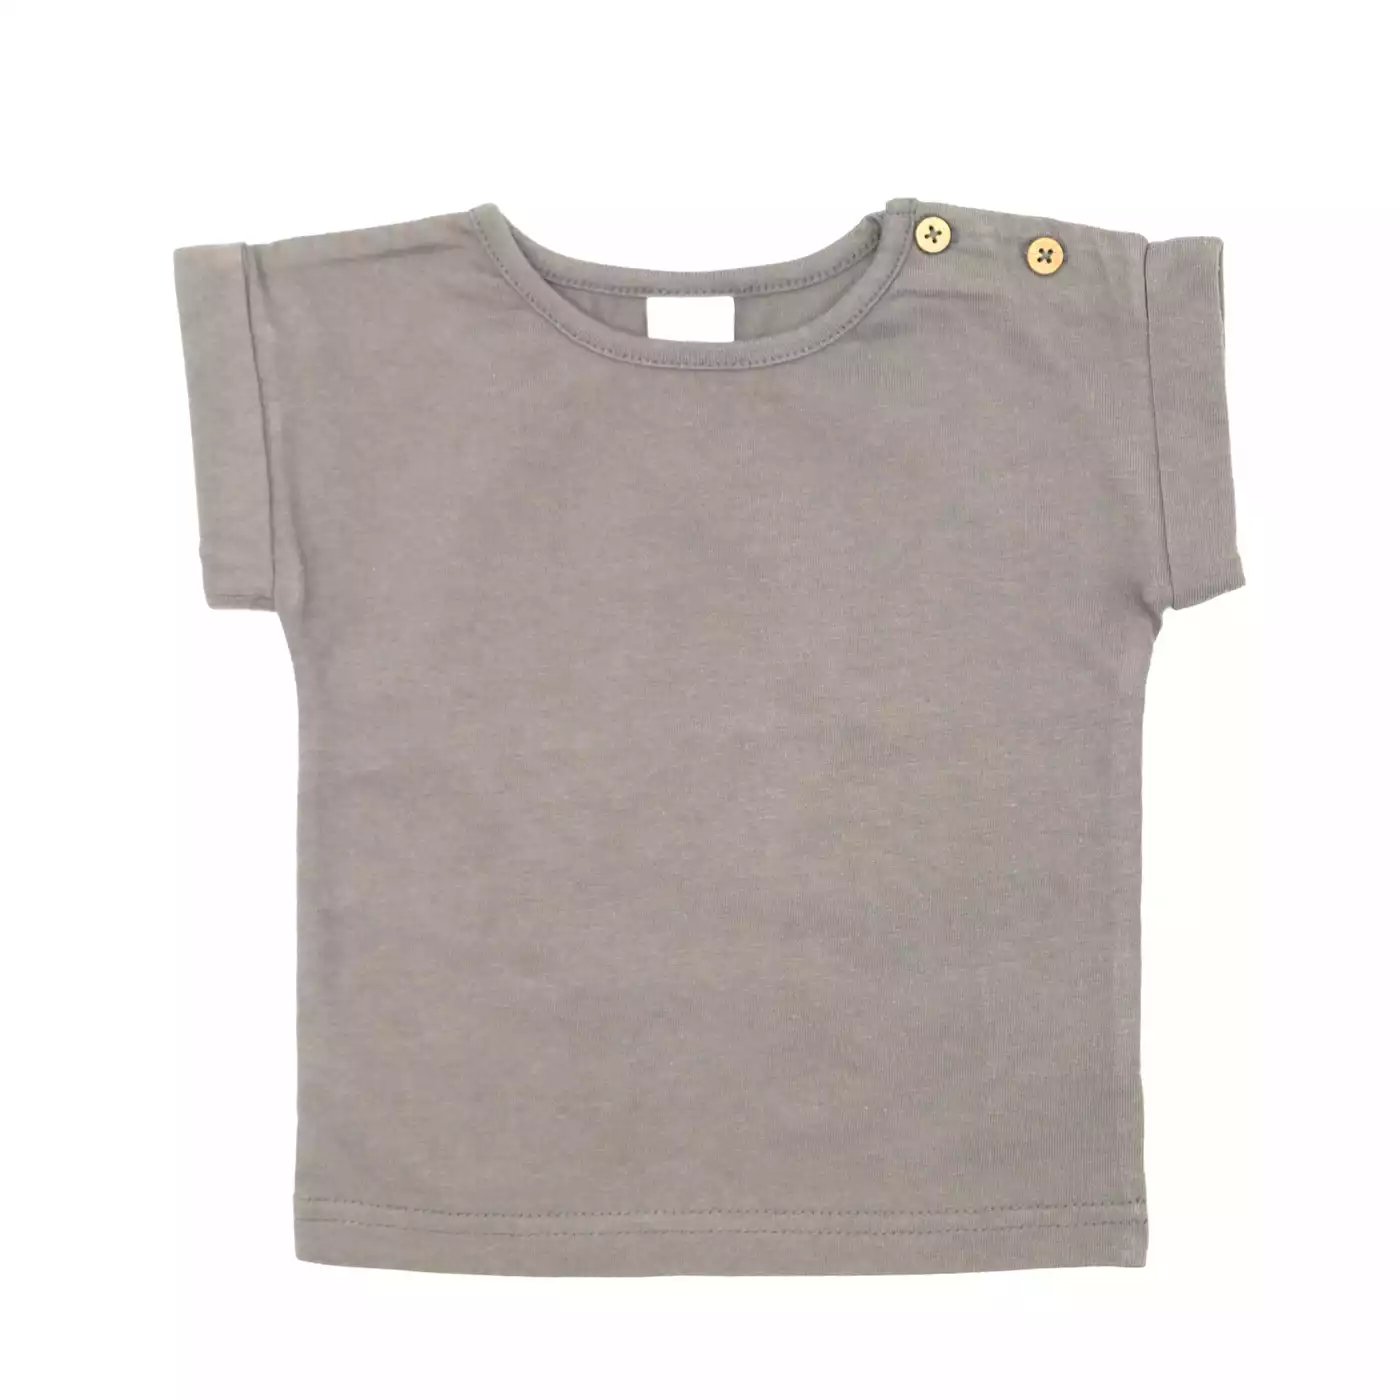 T-Shirt Basic Savannah LITTLE Grau Anthrazit 2006578448402 1